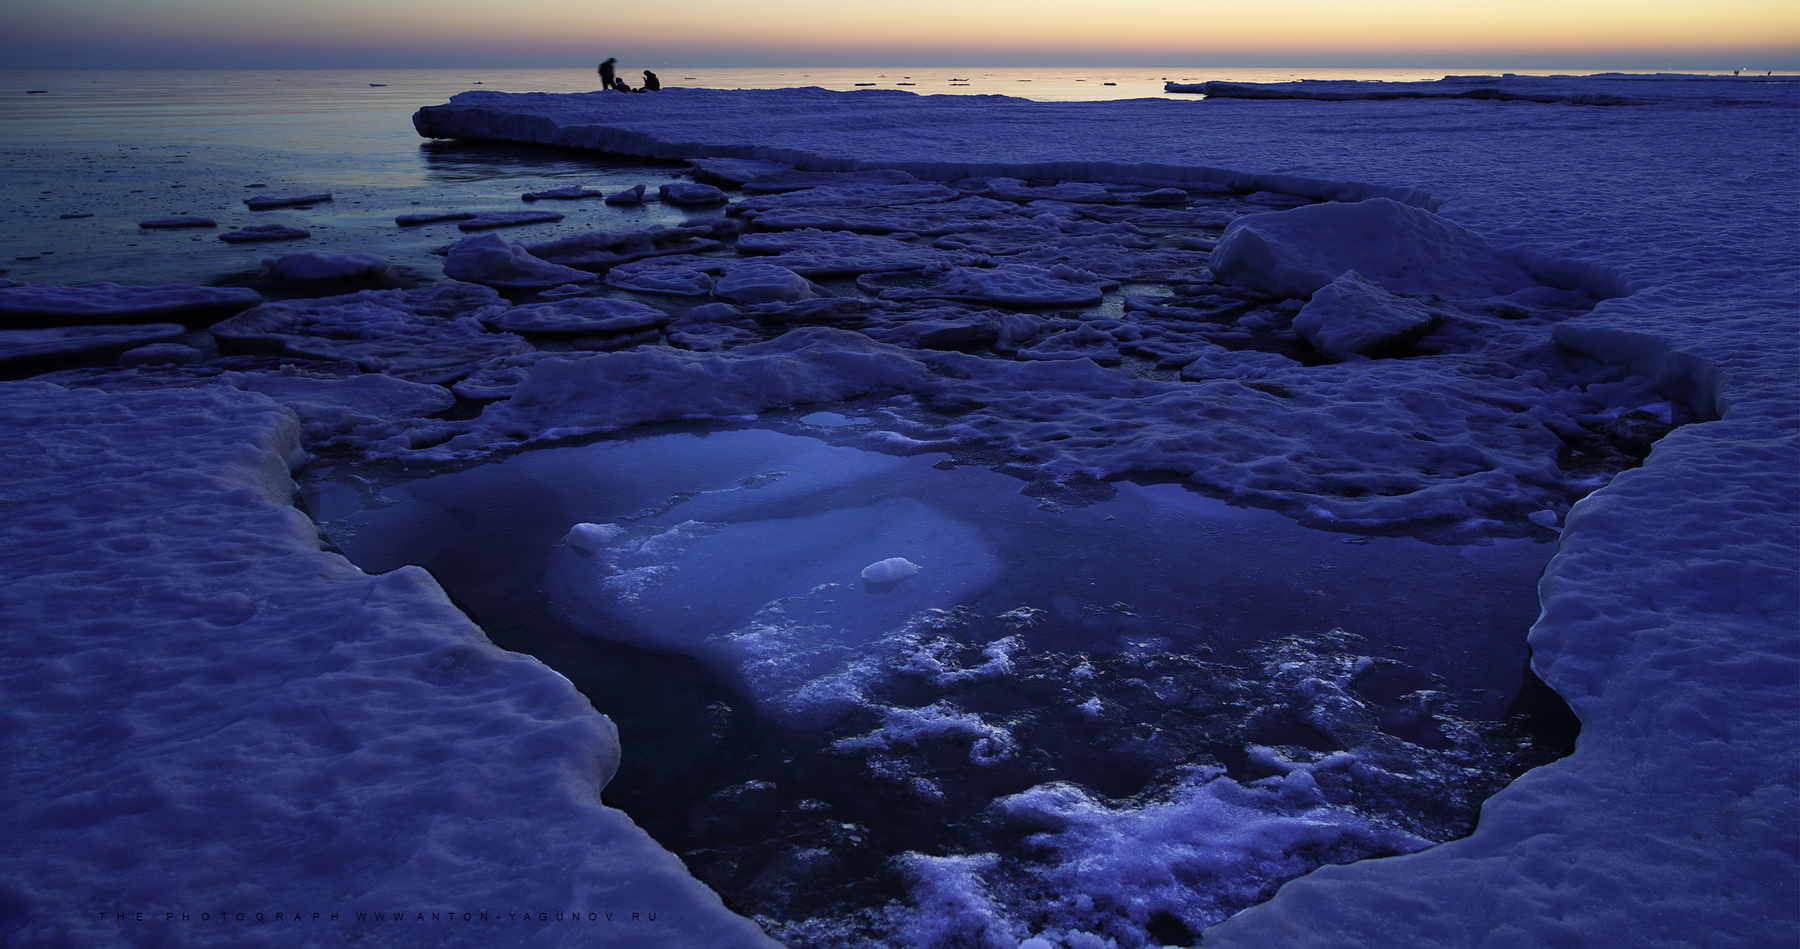 Зимние акаты замёрзшего моря..... пейзаж